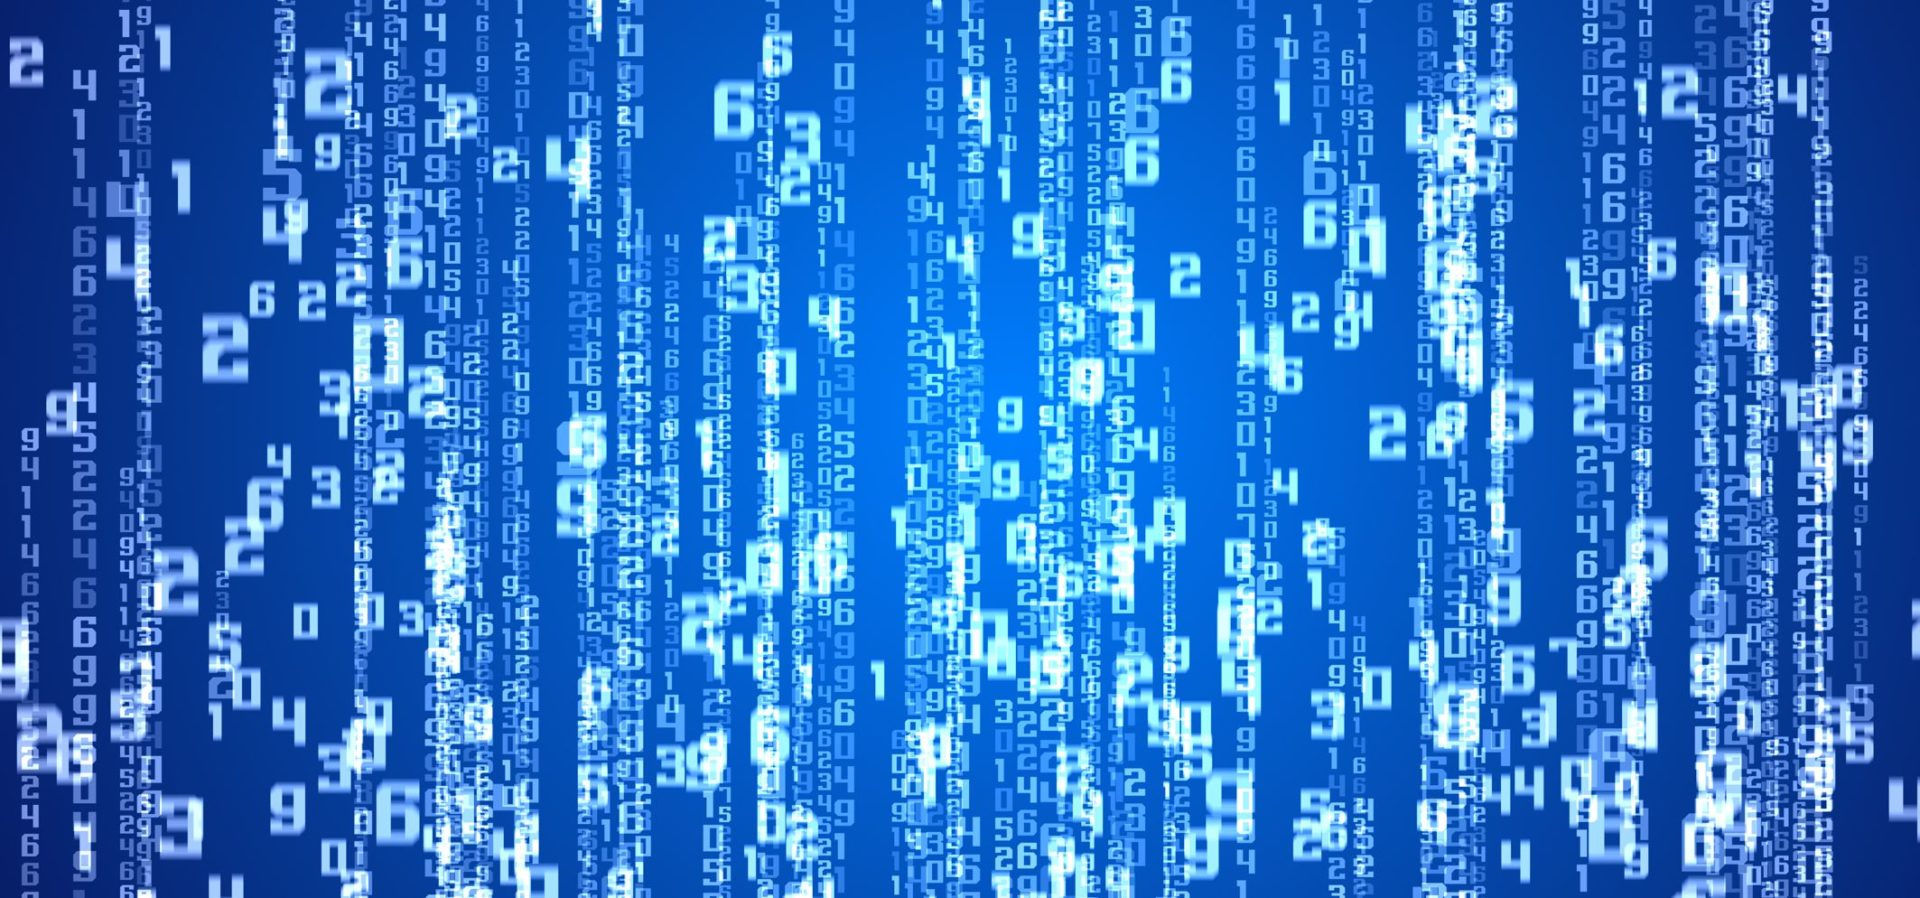 Digital illustration of matrix background on blue.